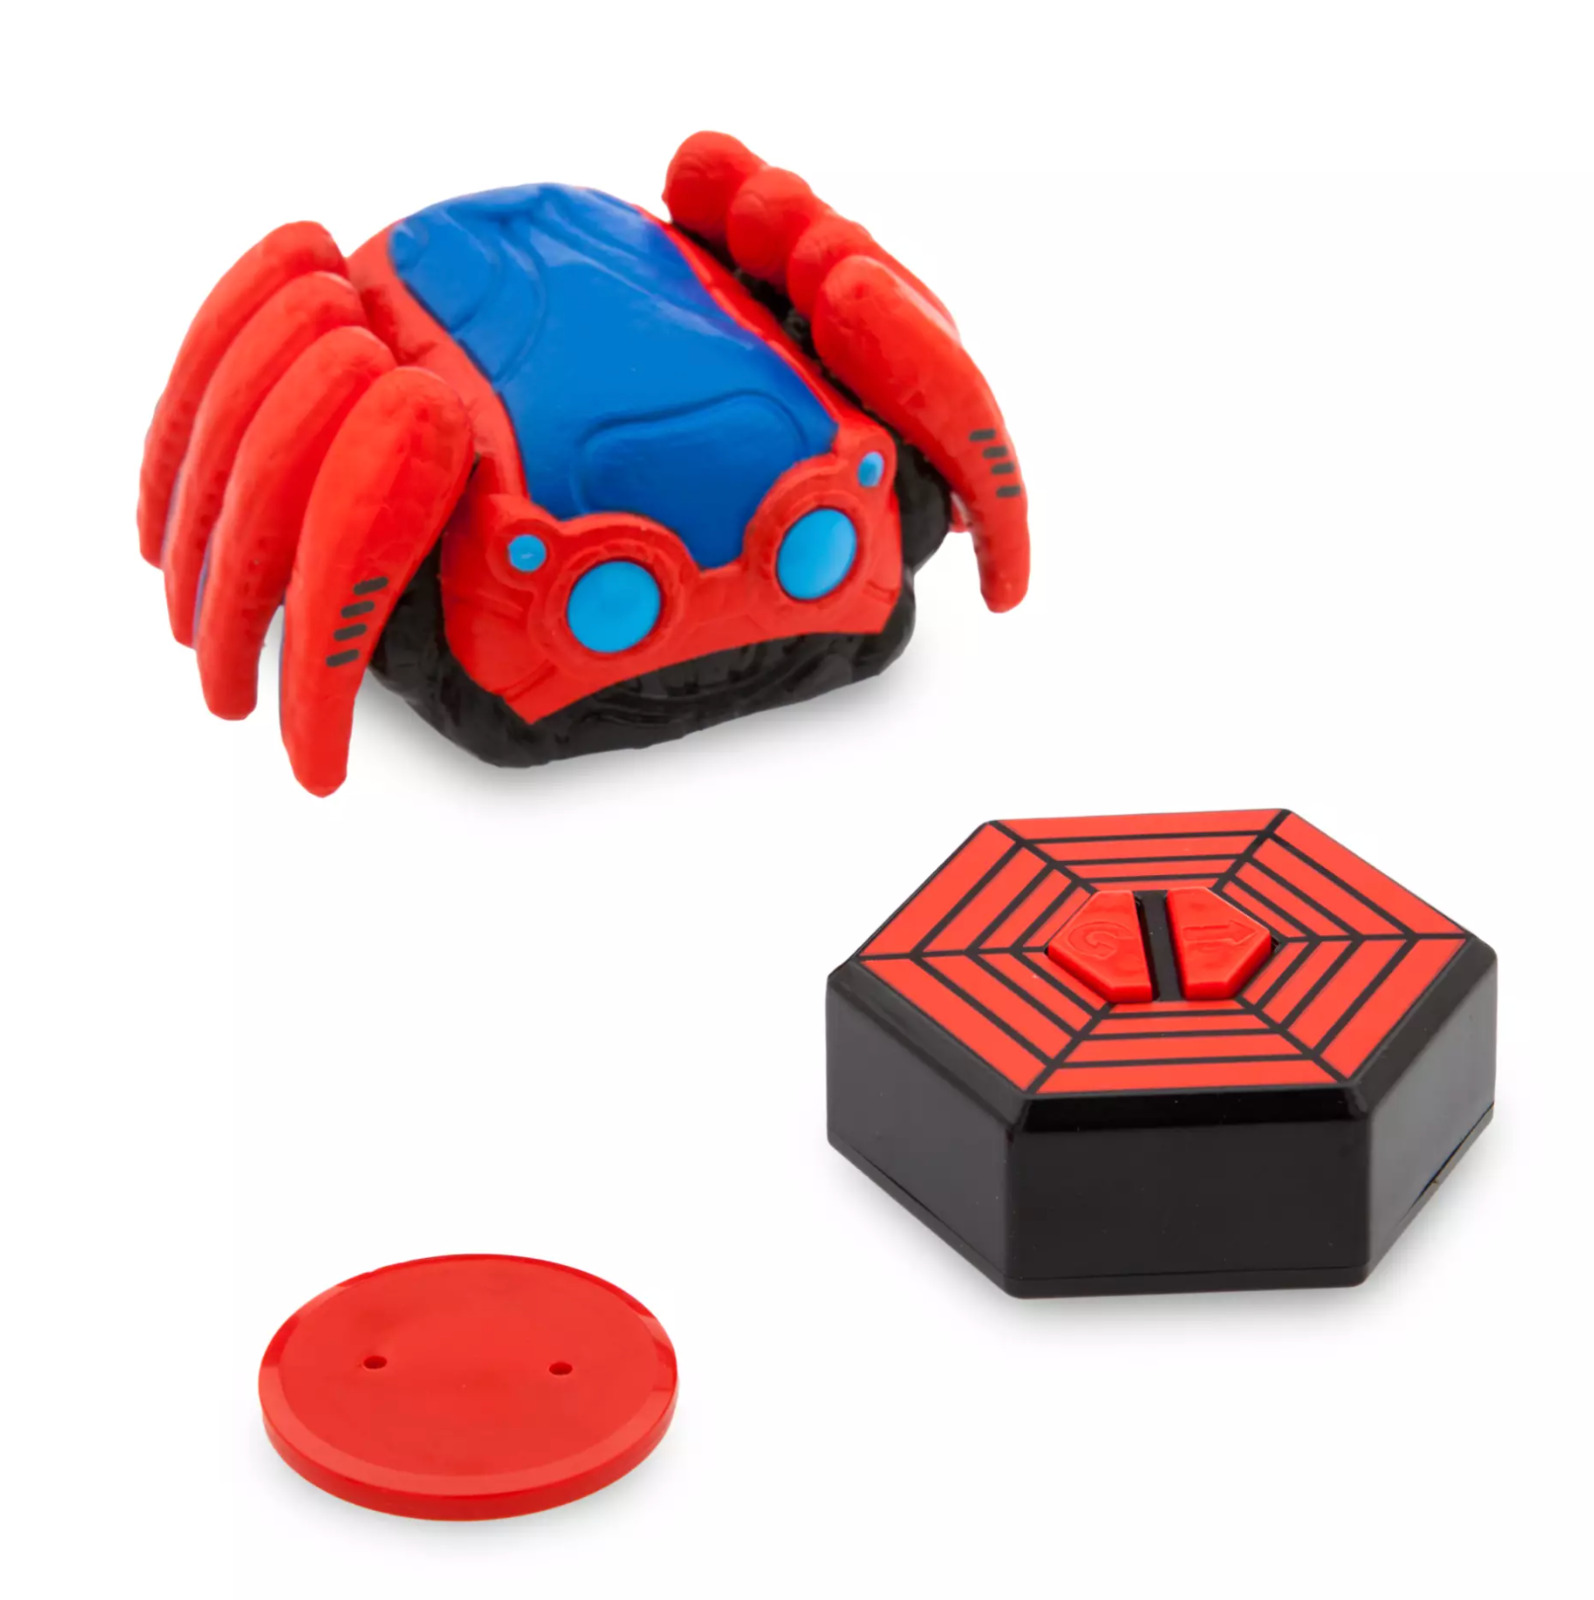 Disneyland Avengers Campus Wearable Remote Spider-Bot Crawls & Spins Spiderman 